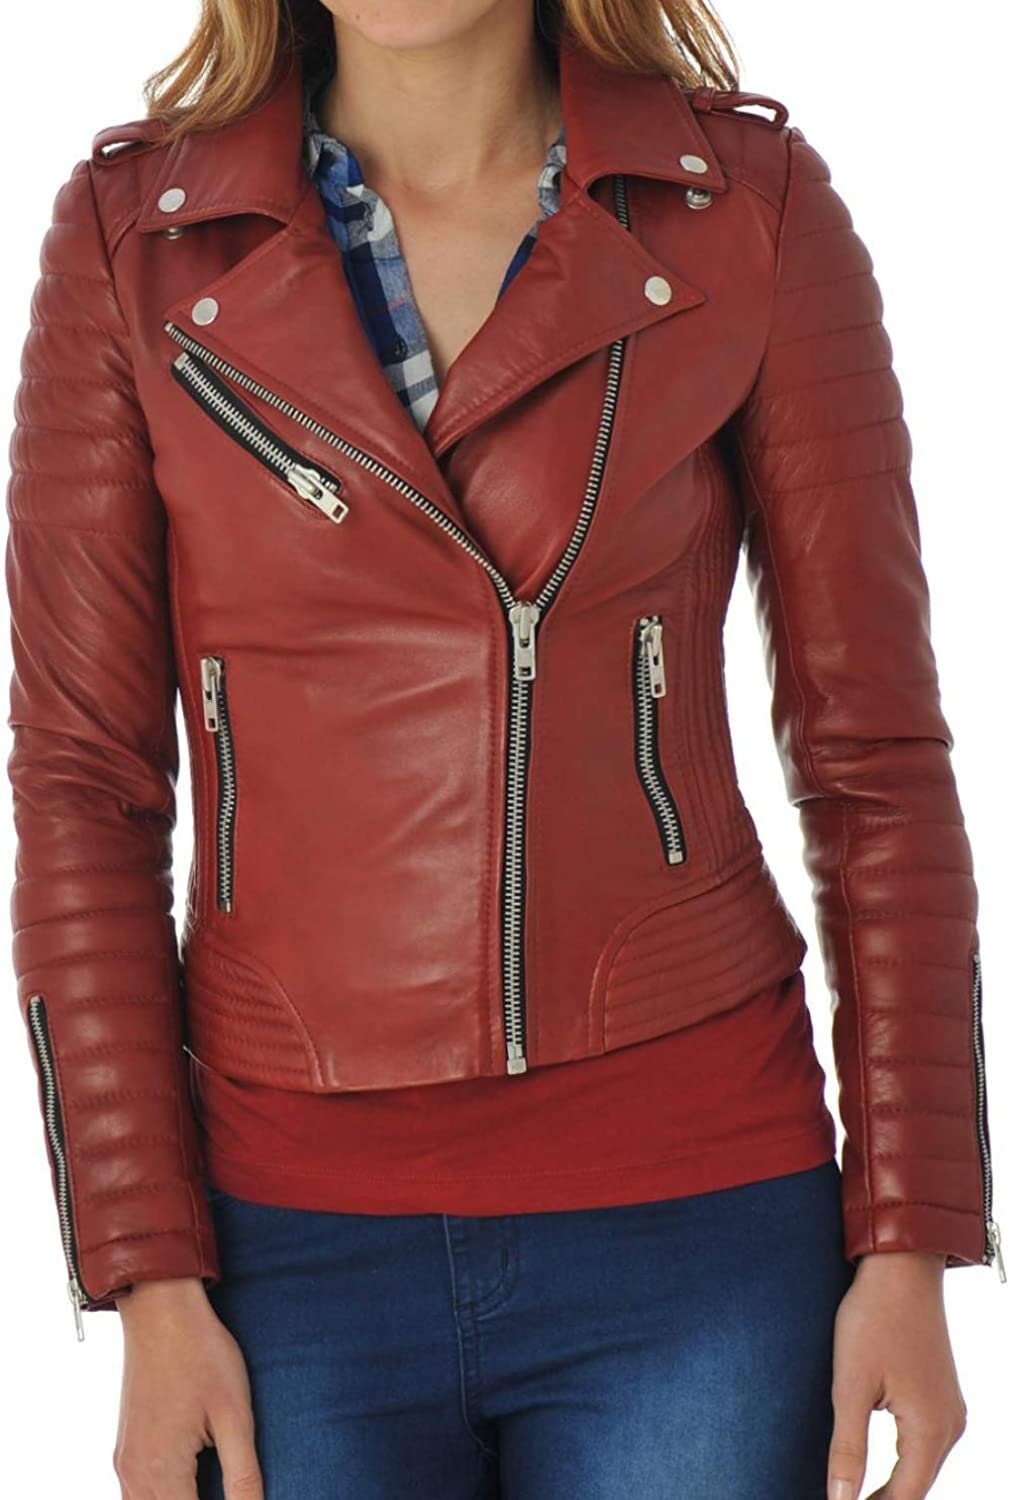 New Red Women Biker Motorcycle leather jacket Genuine Lambskin Size XS S M L XL 